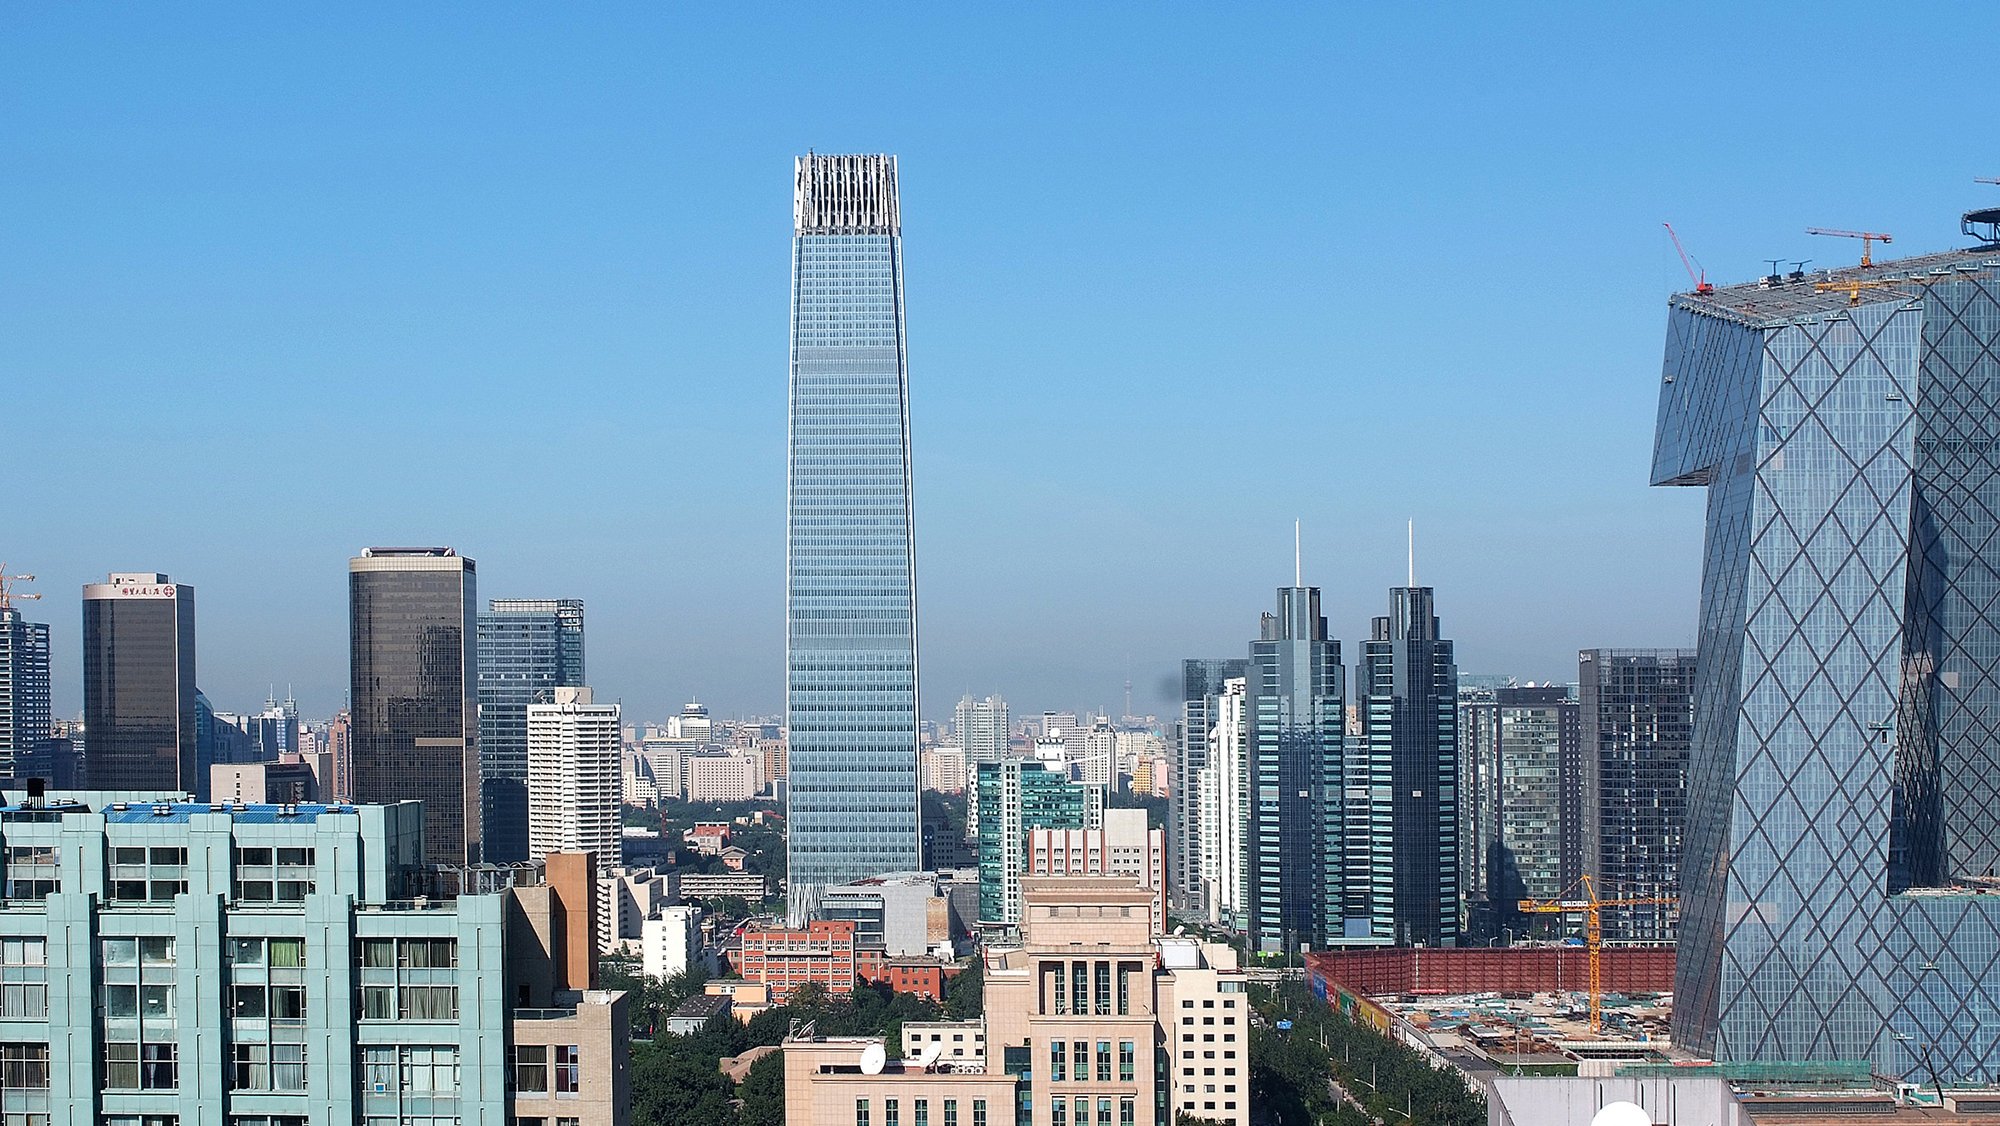 China World Tower